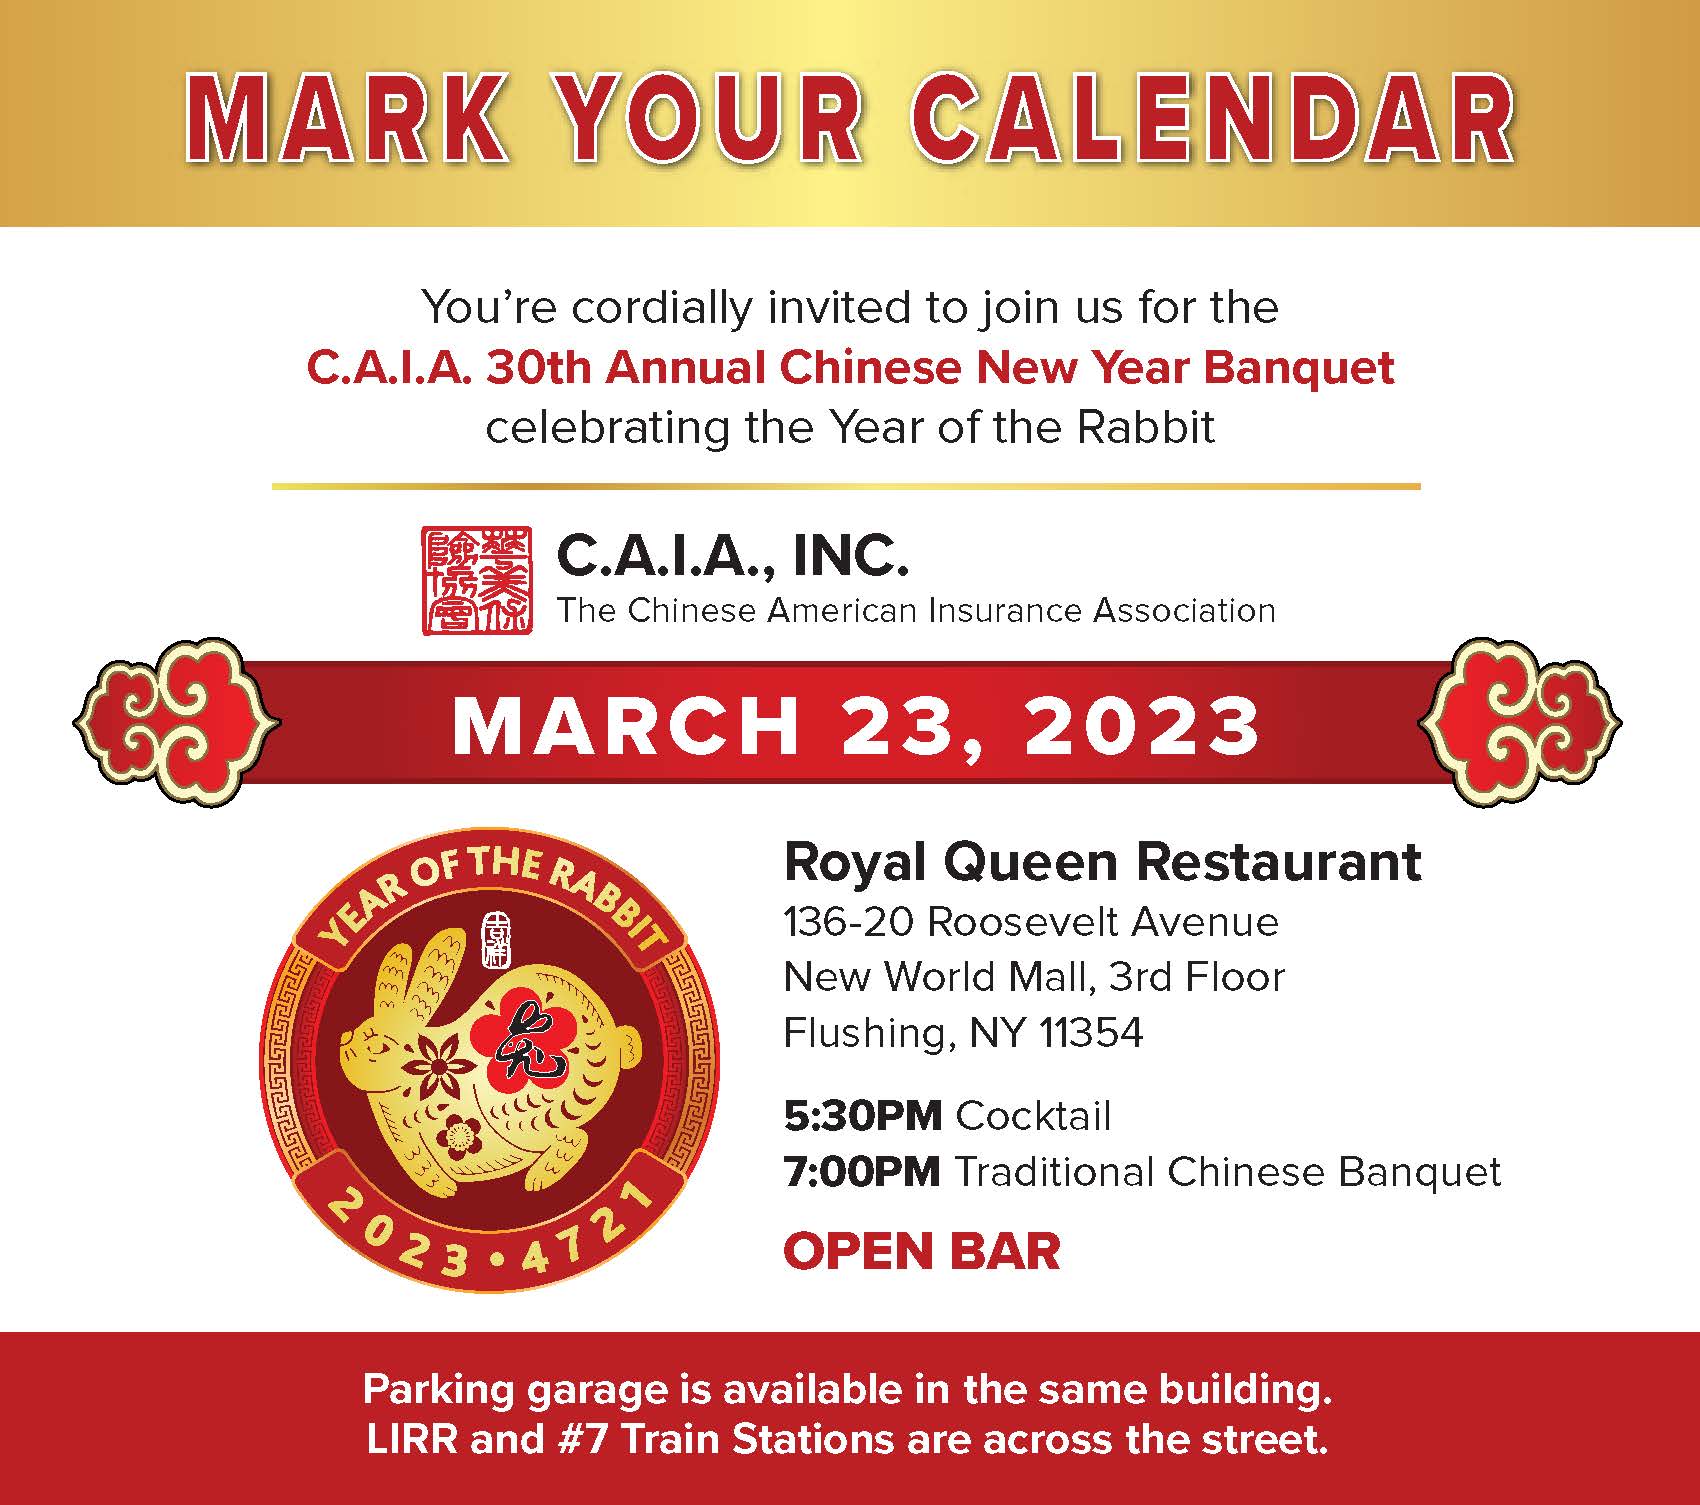 CAIA_2023_Banquet_Mark Your Calendar